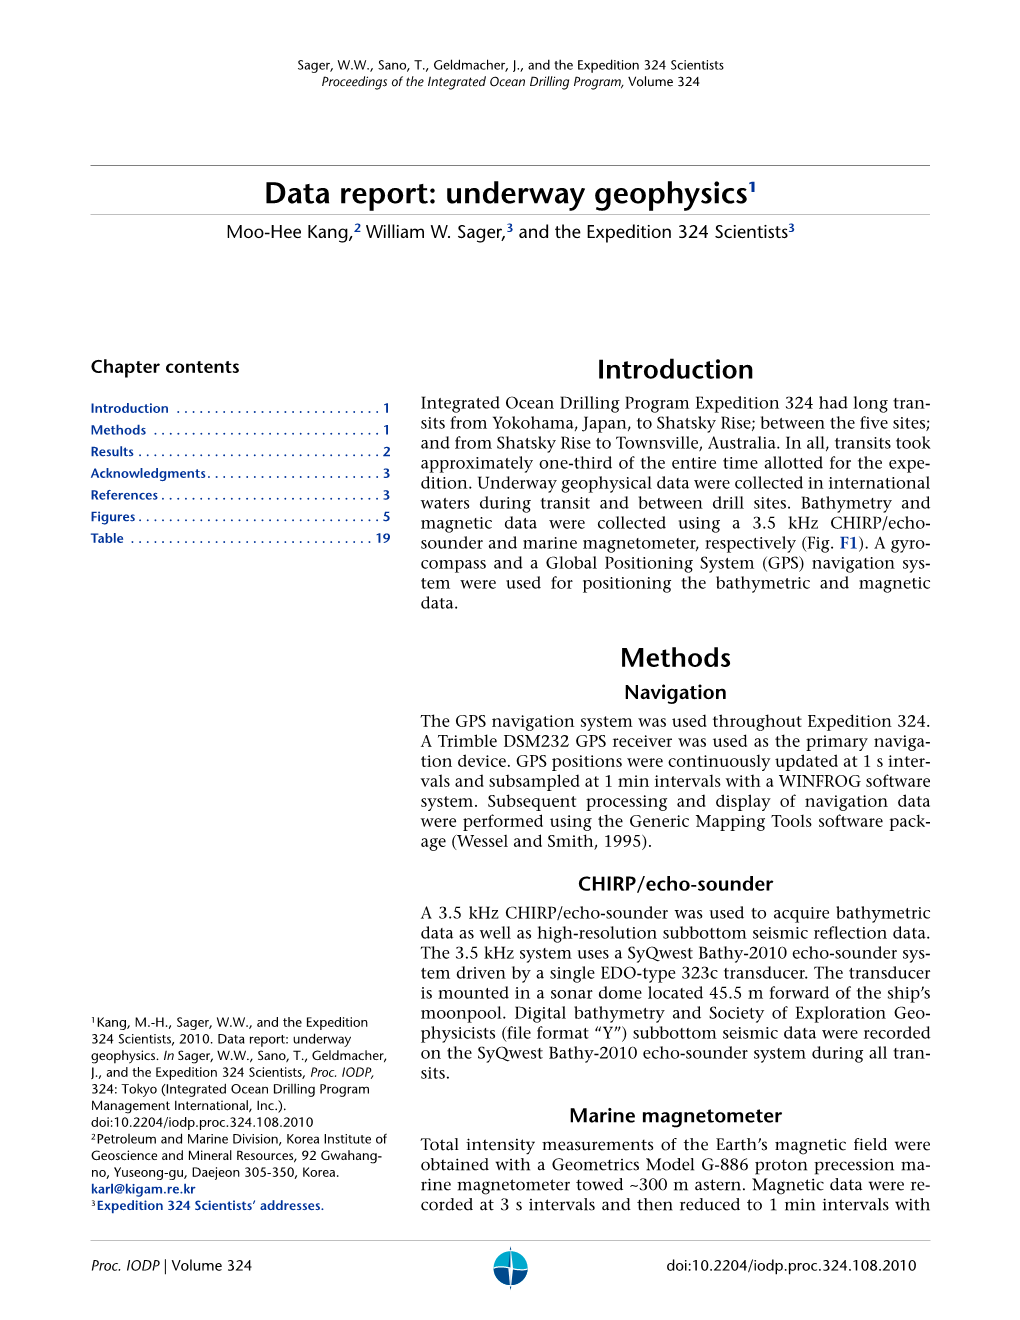 Data Report: Underway Geophysics1 Moo-Hee Kang,2 William W